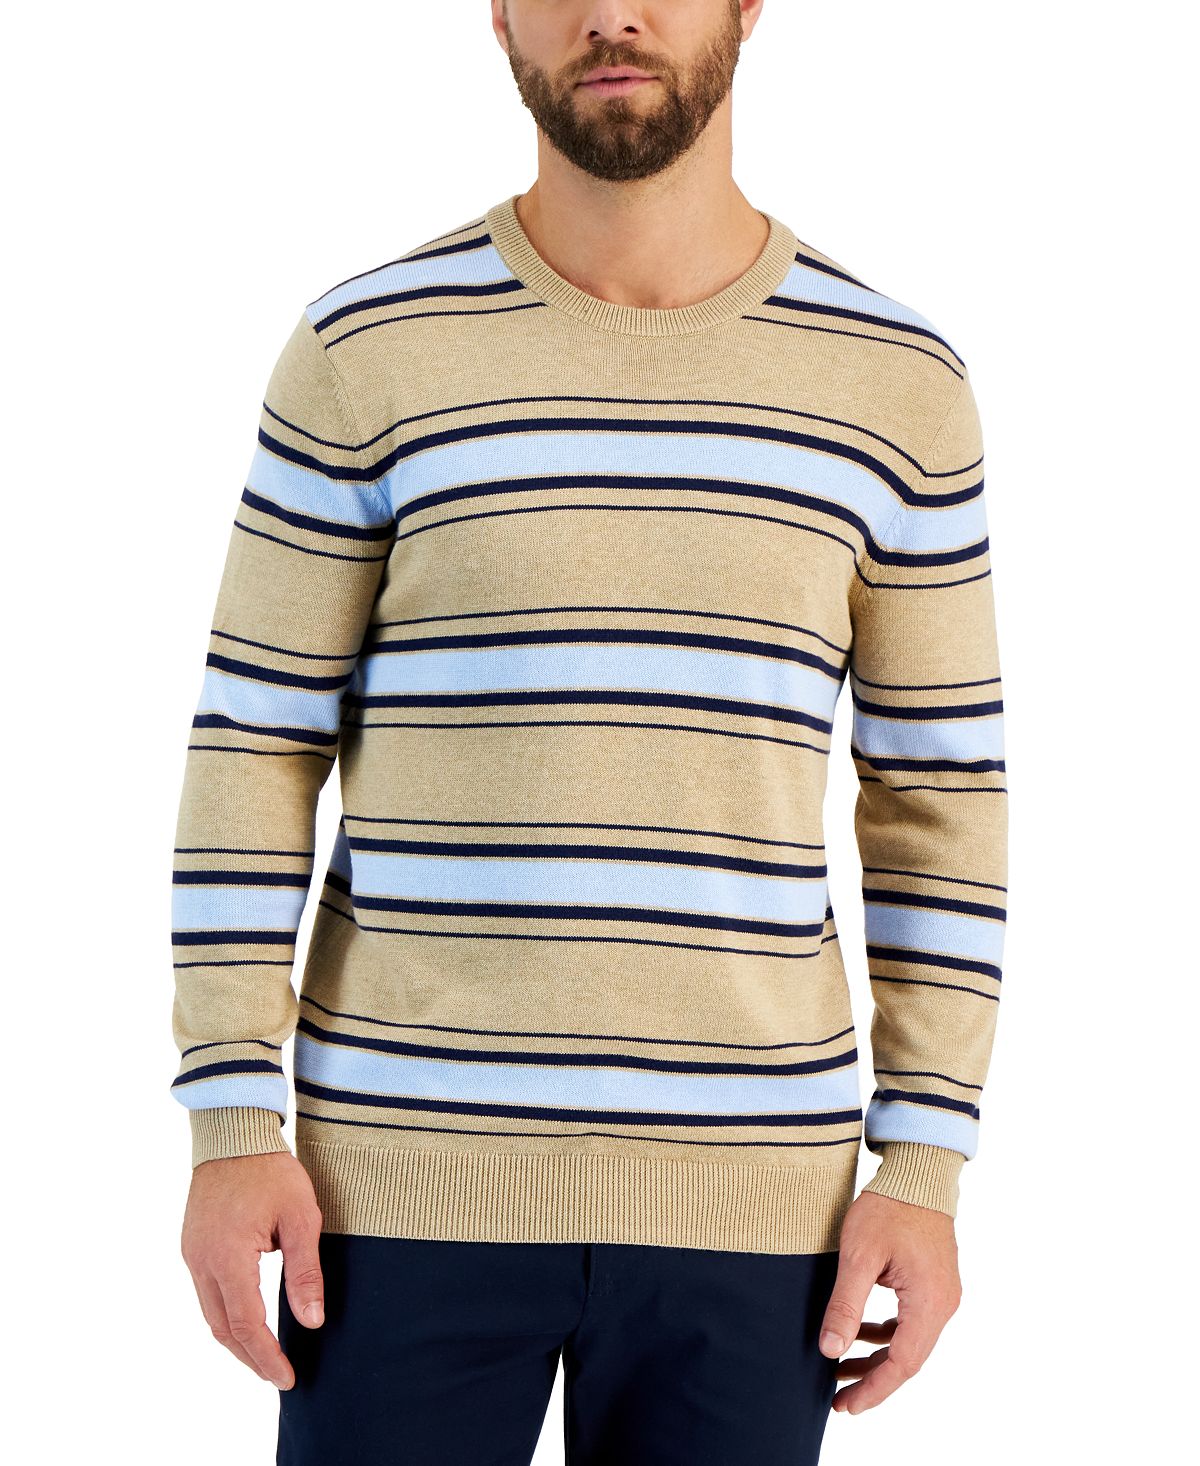 Мужской свитер с круглым вырезом в приподнятую полоску и длинными рукавами Club Room